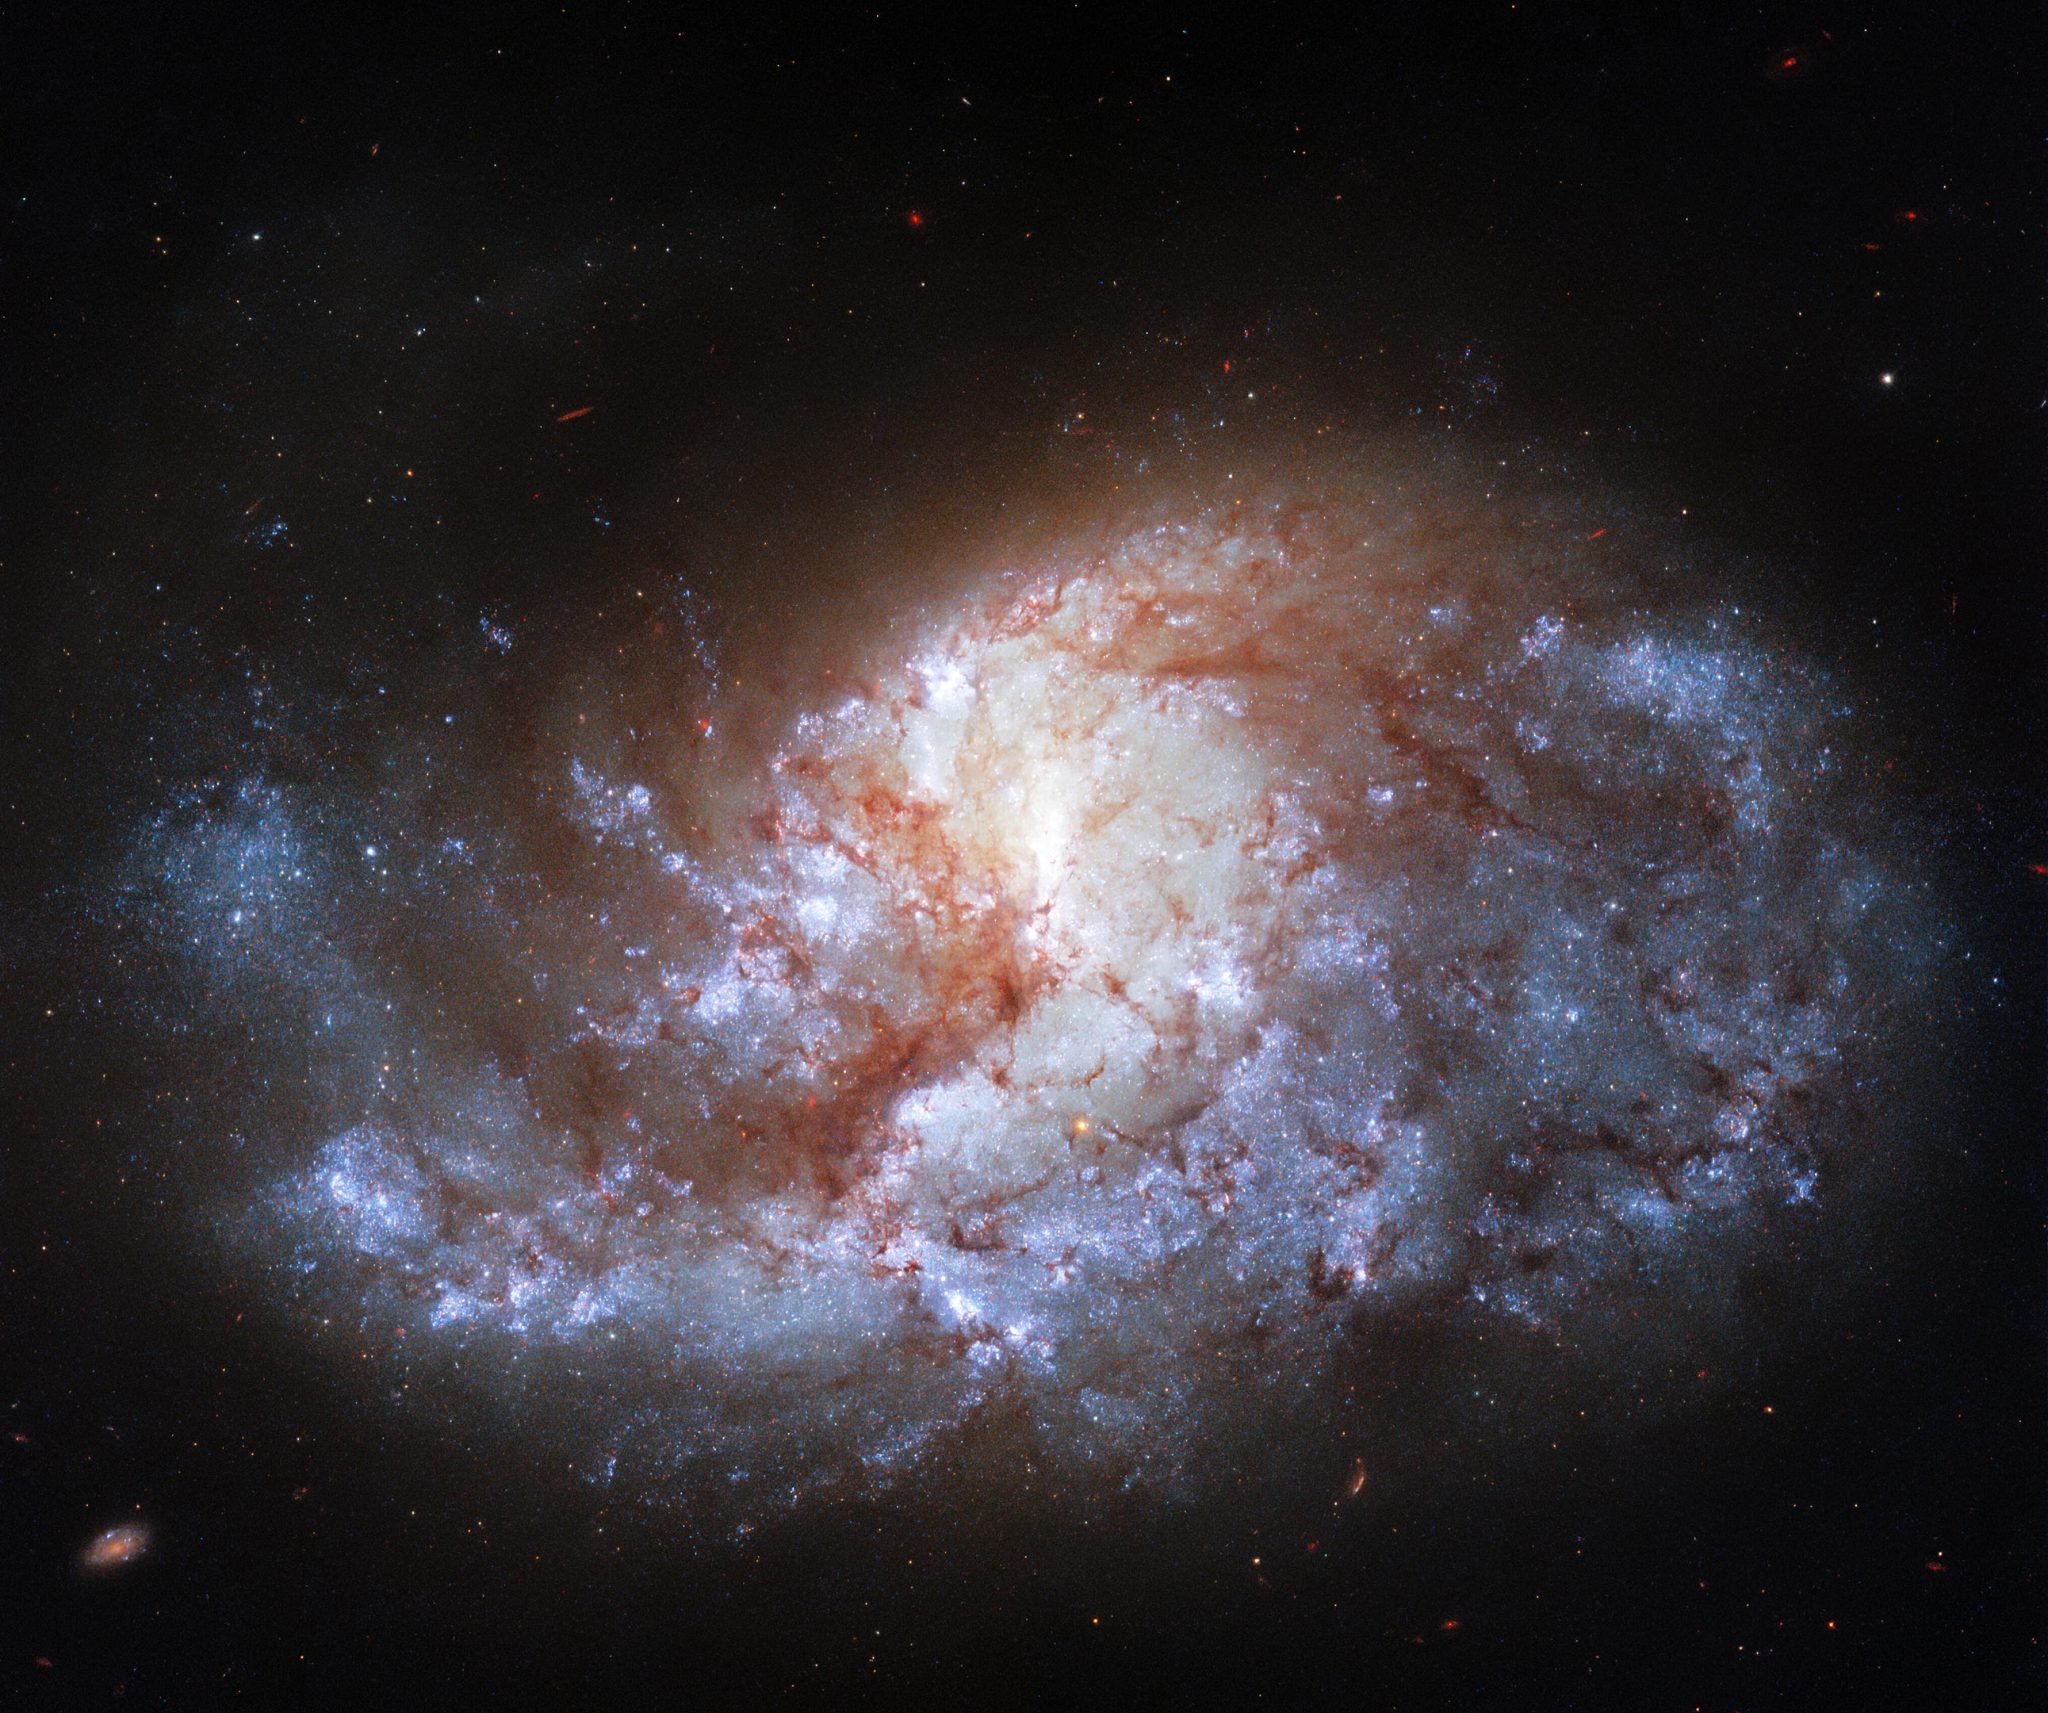 哈勃太空望远镜拍摄的宝石般明亮的天炉座NGC 1385